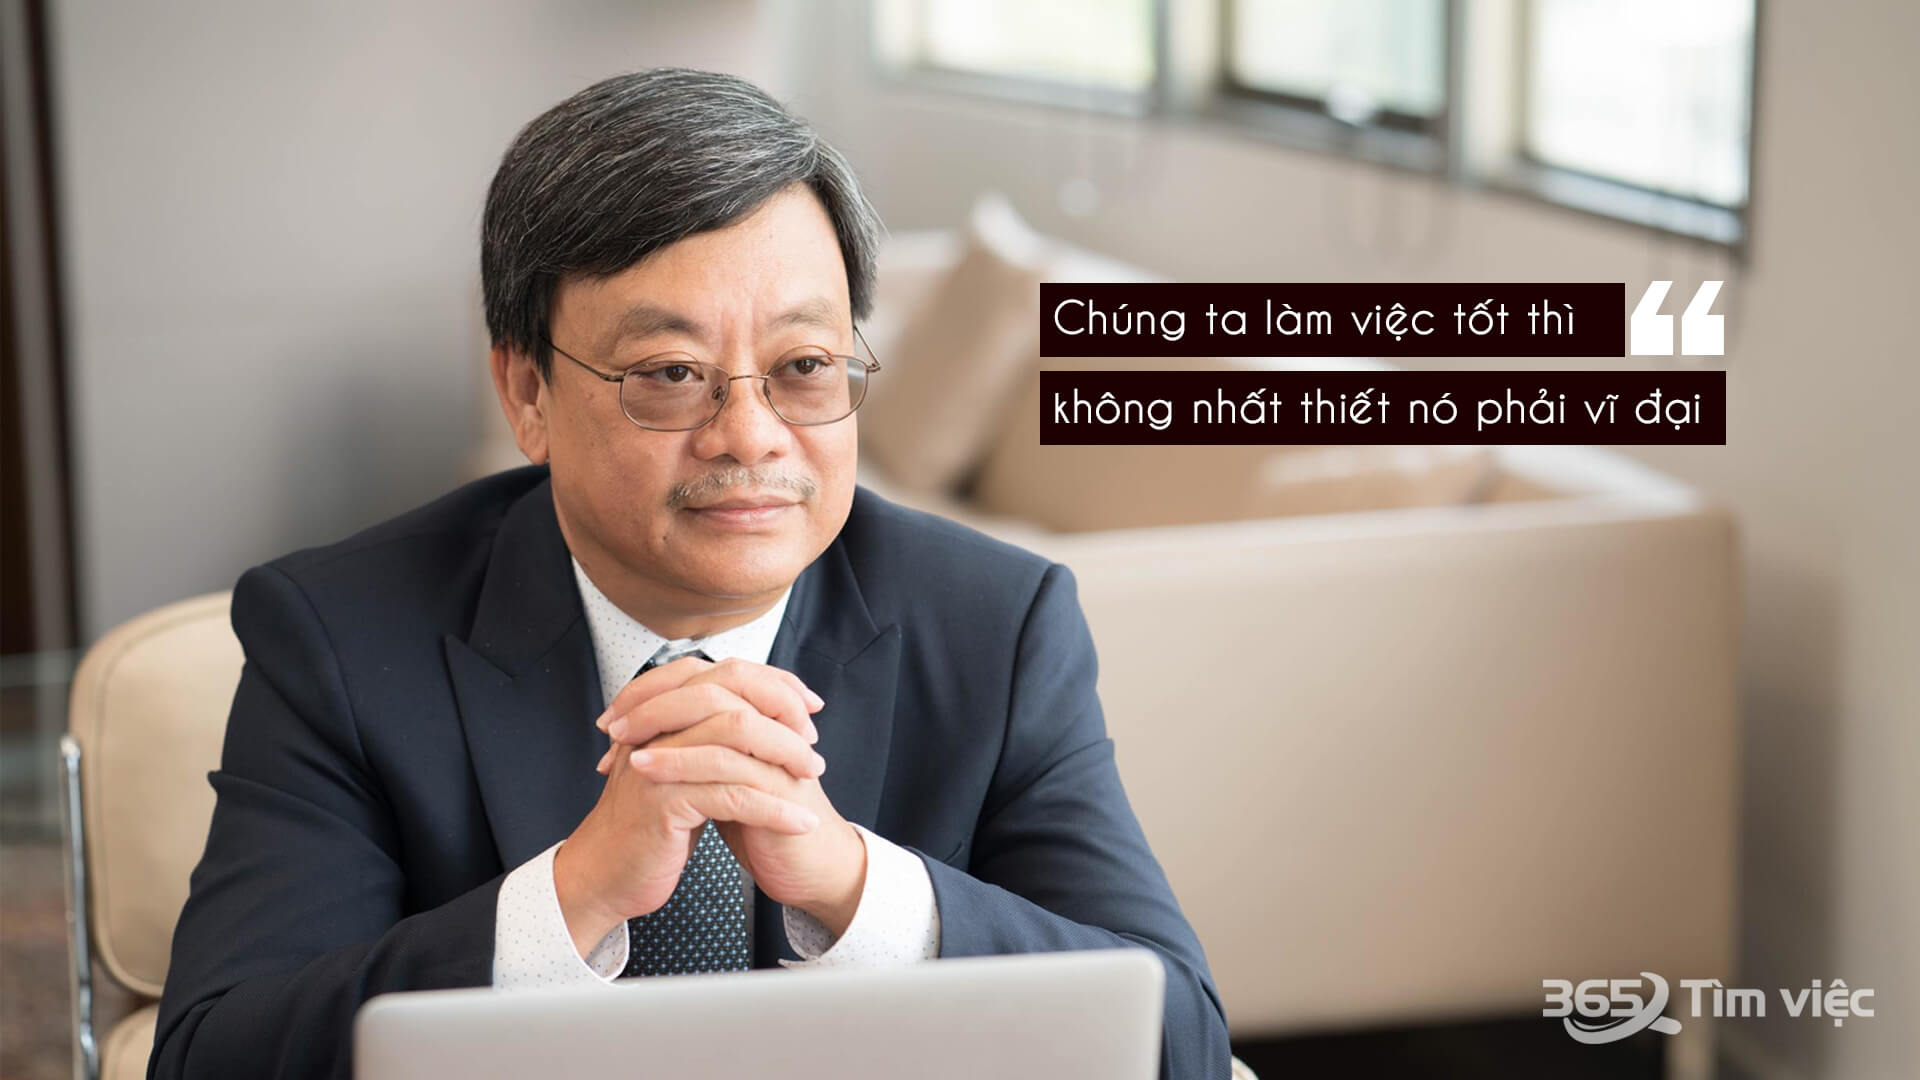 Quan điểm kinh doanh của ông chủ Nguyễn Đăng Quang